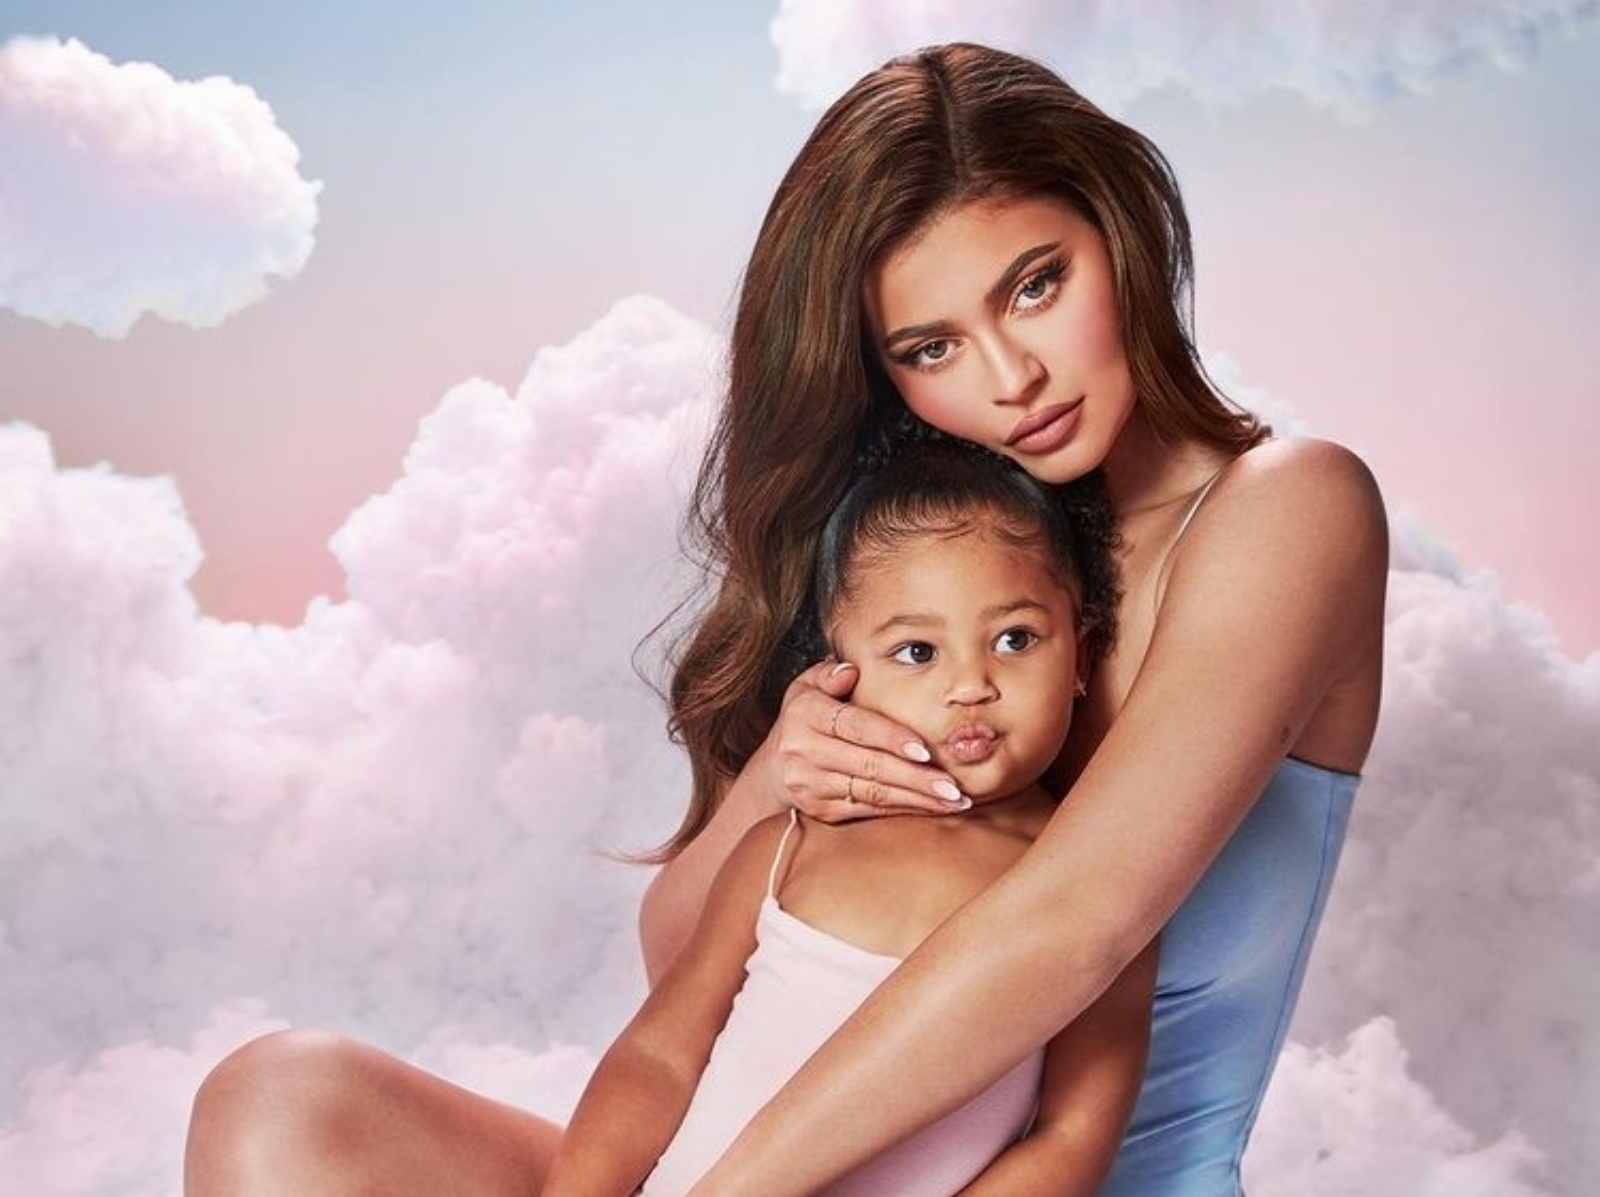 凱莉珍娜 Kylie Jenner 為女兒 Stormi 慶祝 5 歲生日，巨型人臉溜滑梯、客製化抱枕周邊⋯超浮誇遊樂園曝光